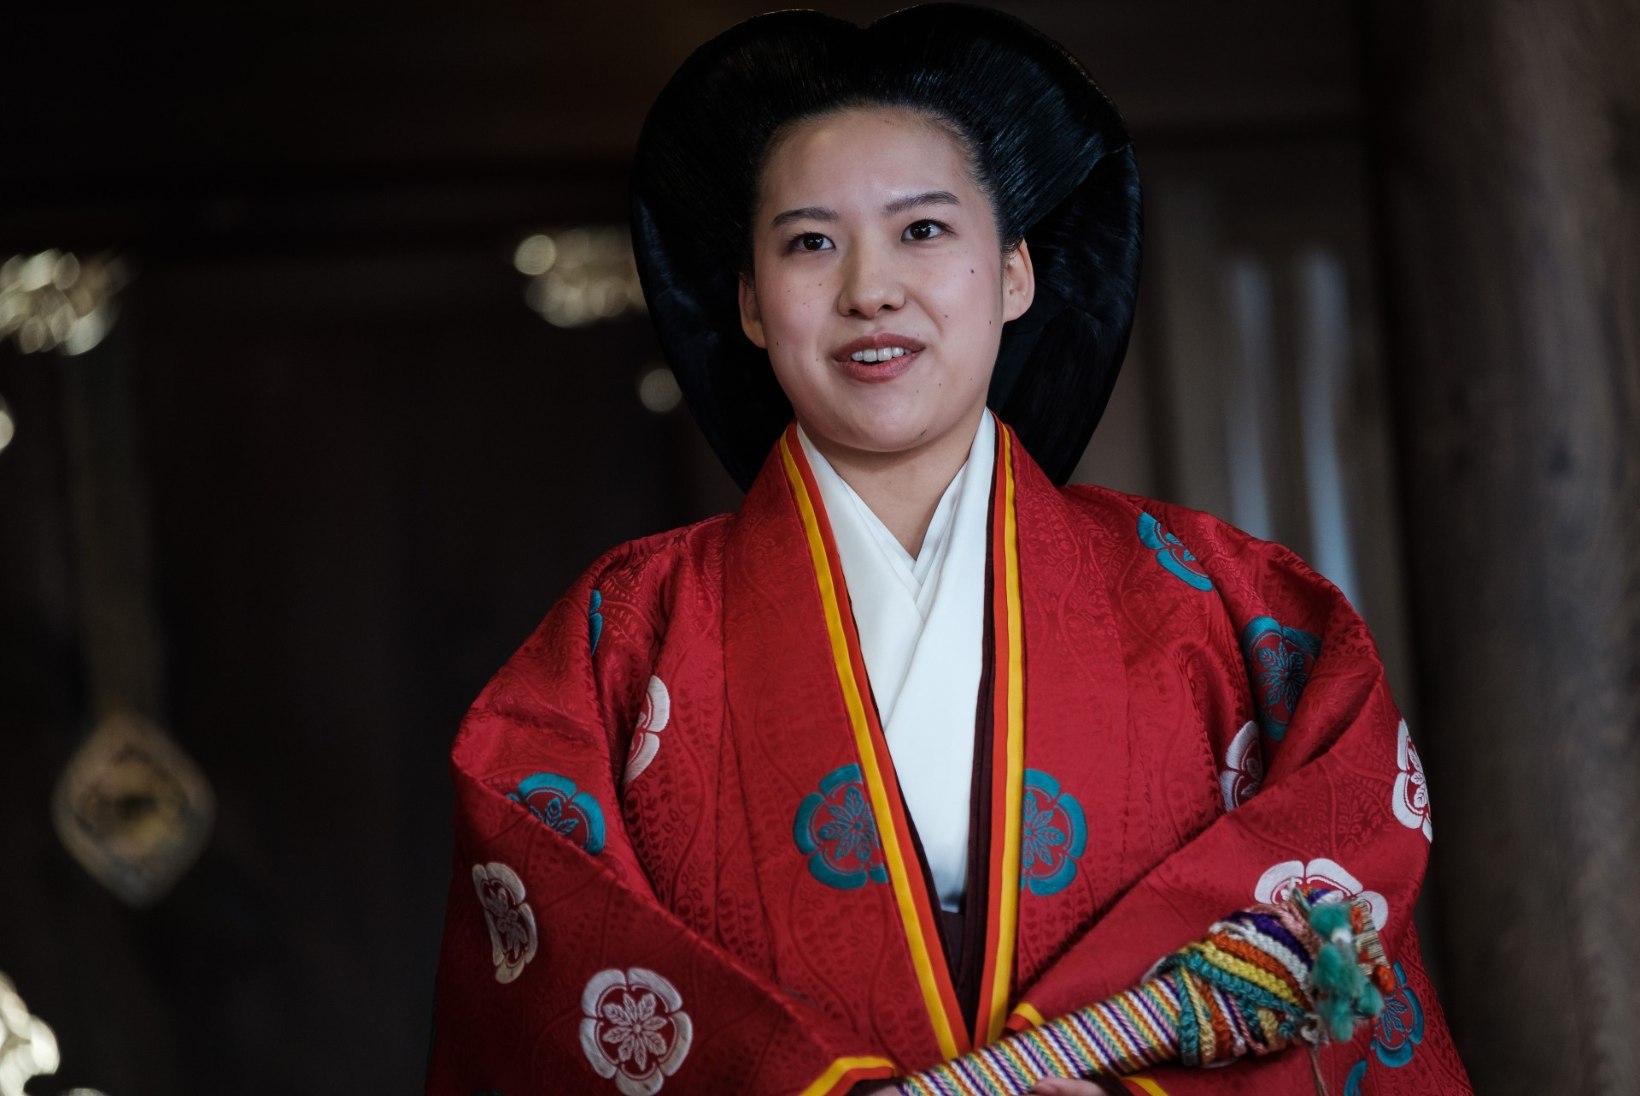 FOTOD | Jaapani printsess Ayako abiellus ning loobus oma kõrgest staatusest